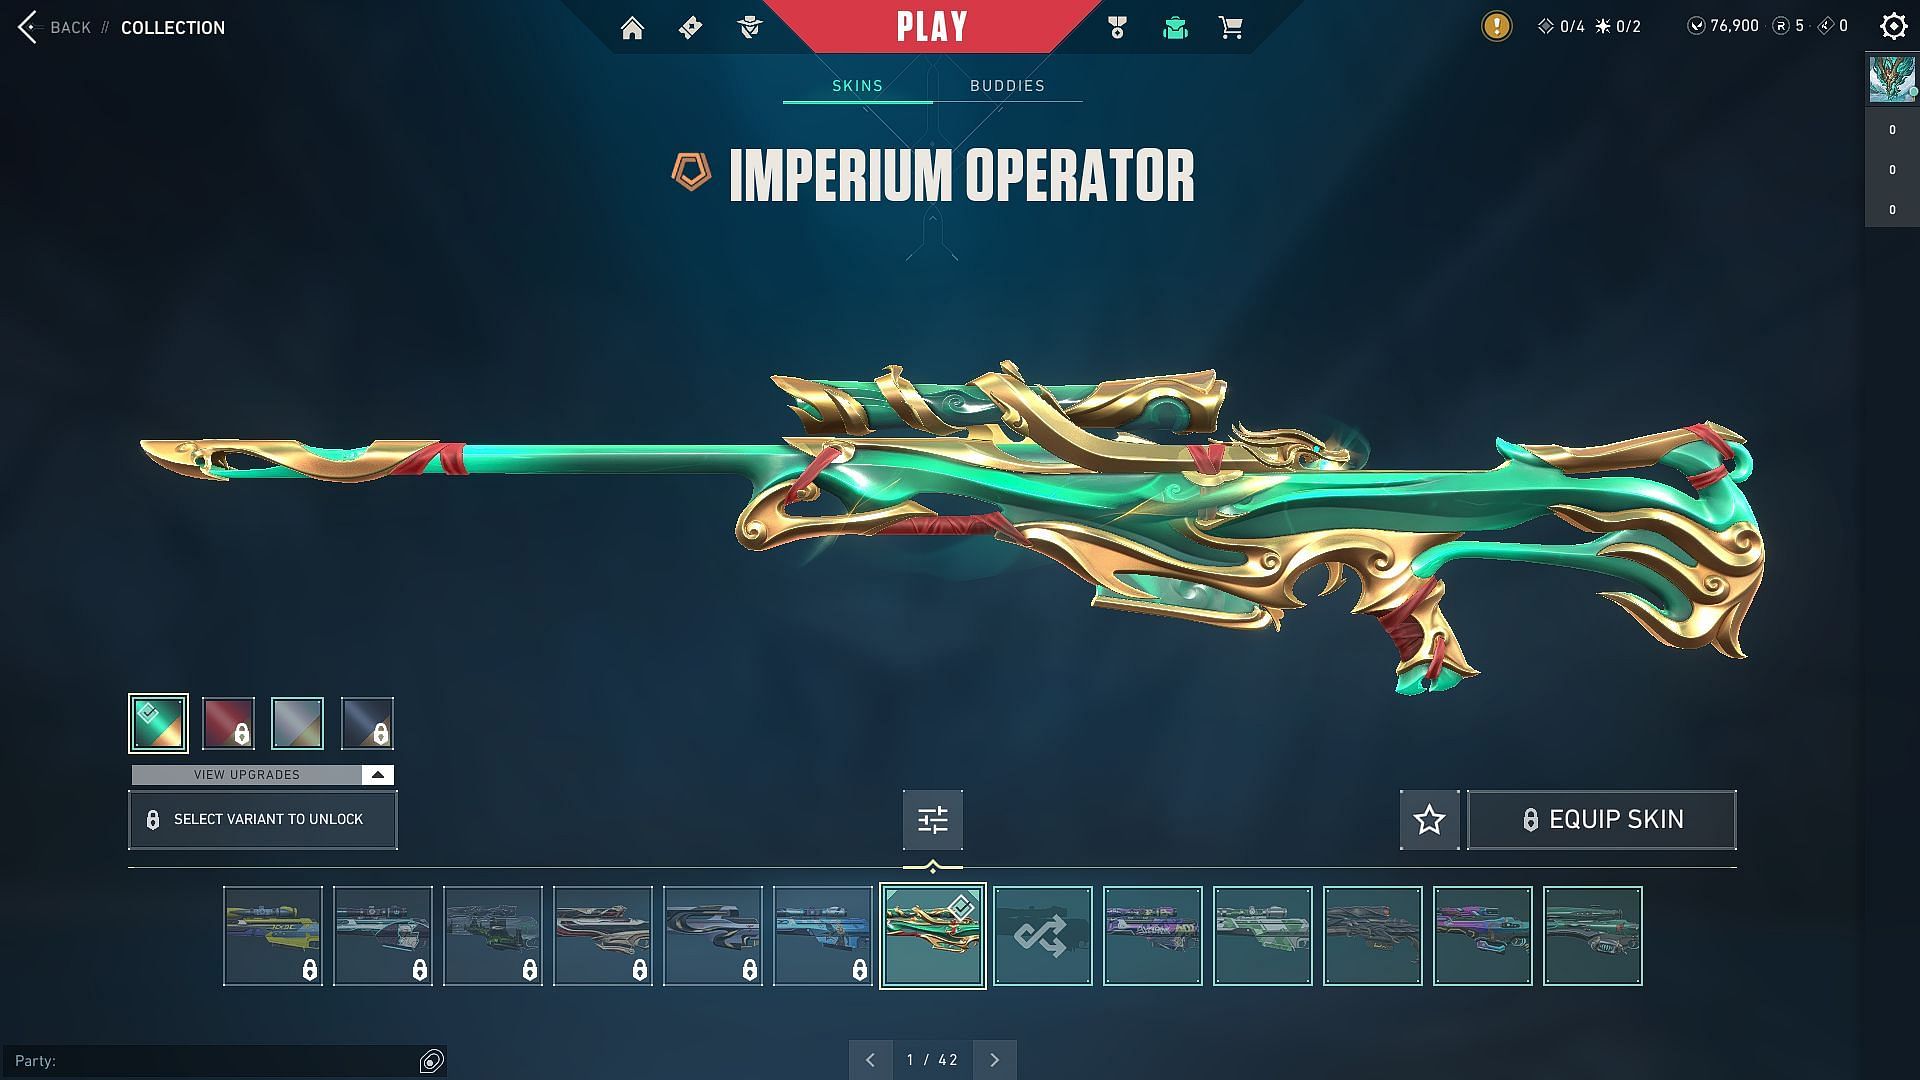 Imperium Operator (Image via Riot Games)